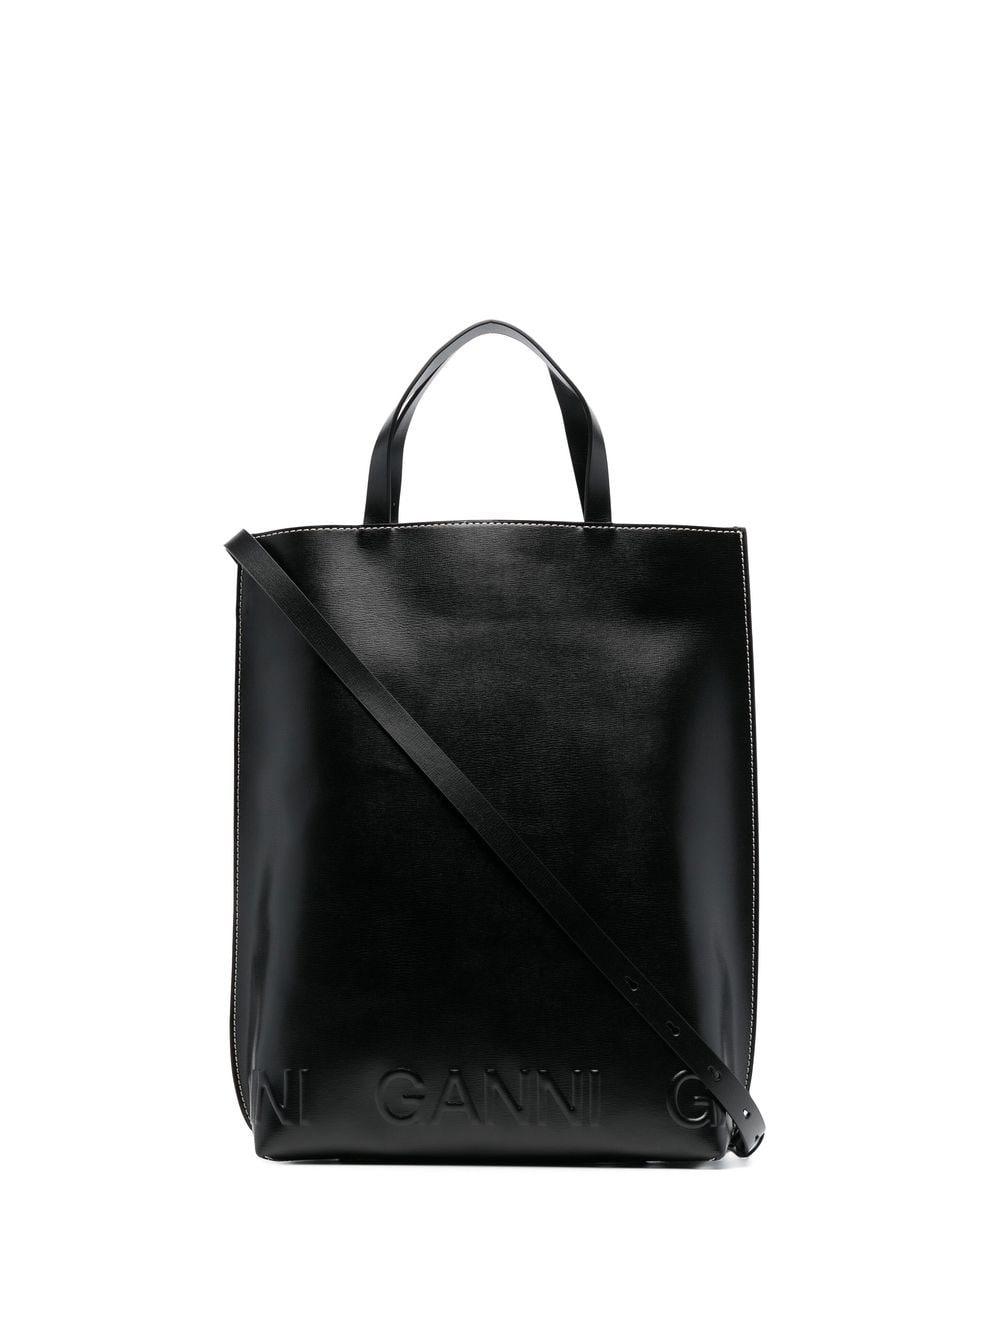 Ganni Leather Debossed-logo Tote Bag in Black | Lyst UK